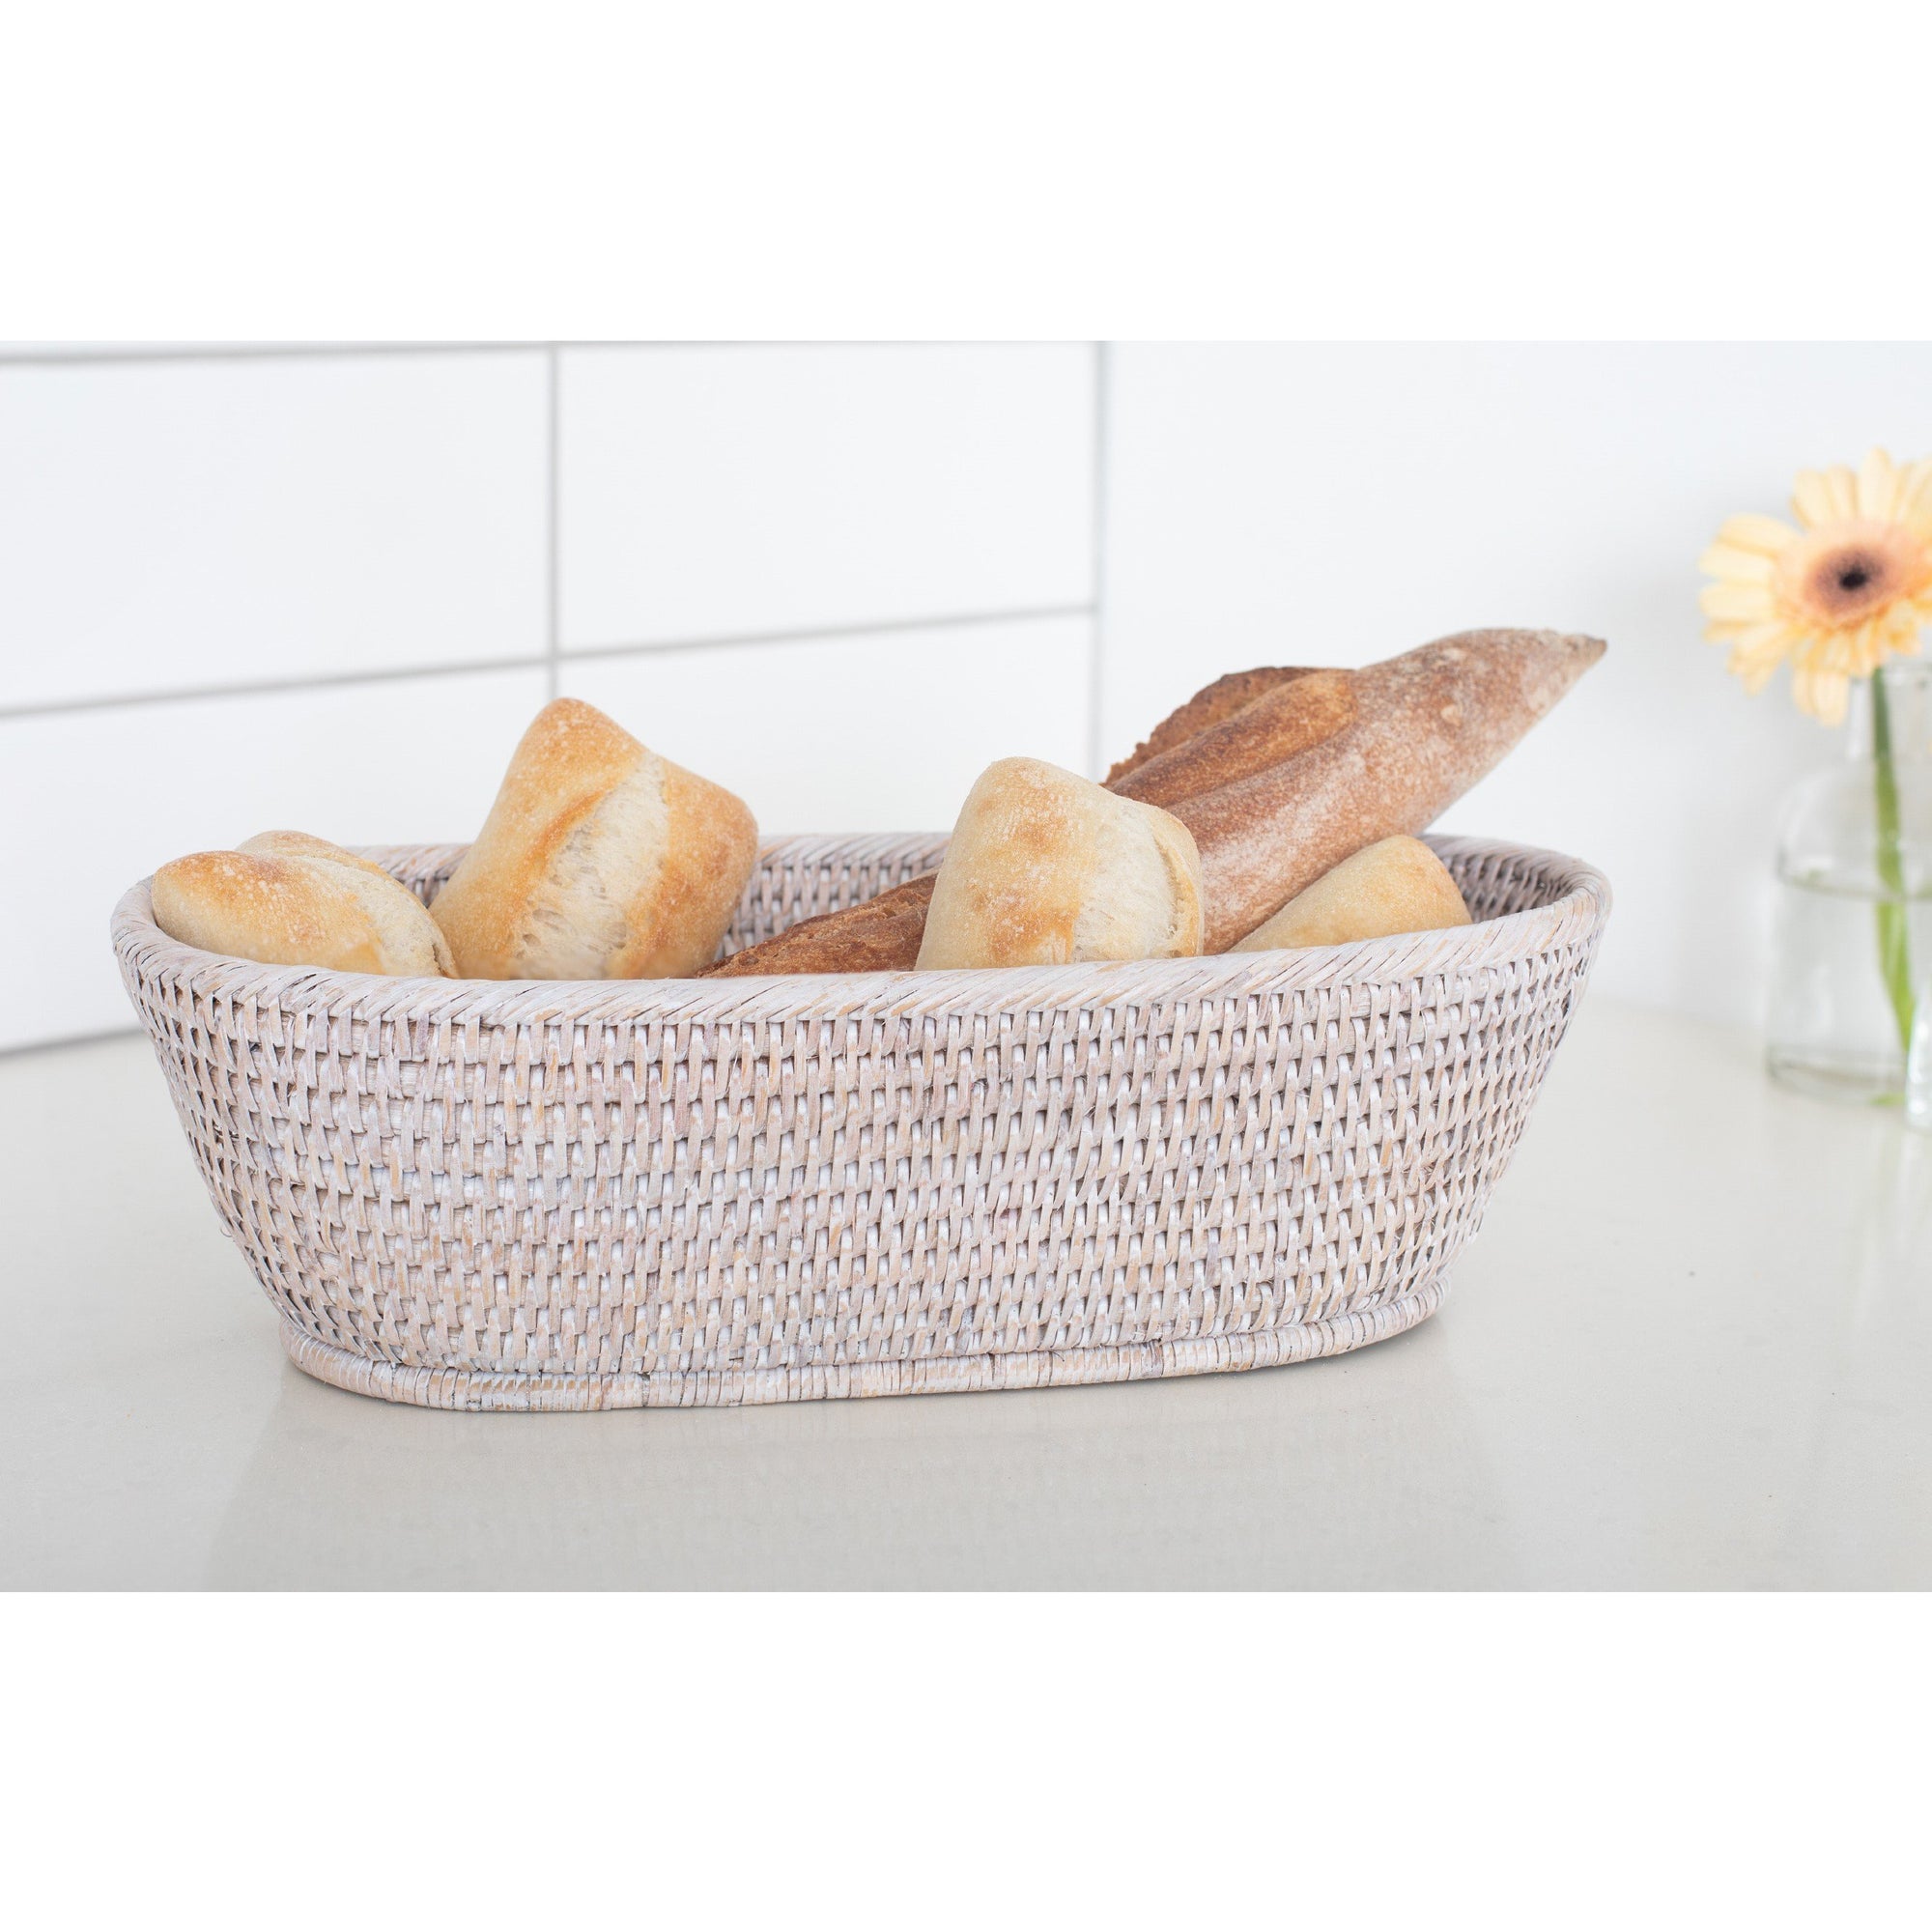 Bread basket white wash